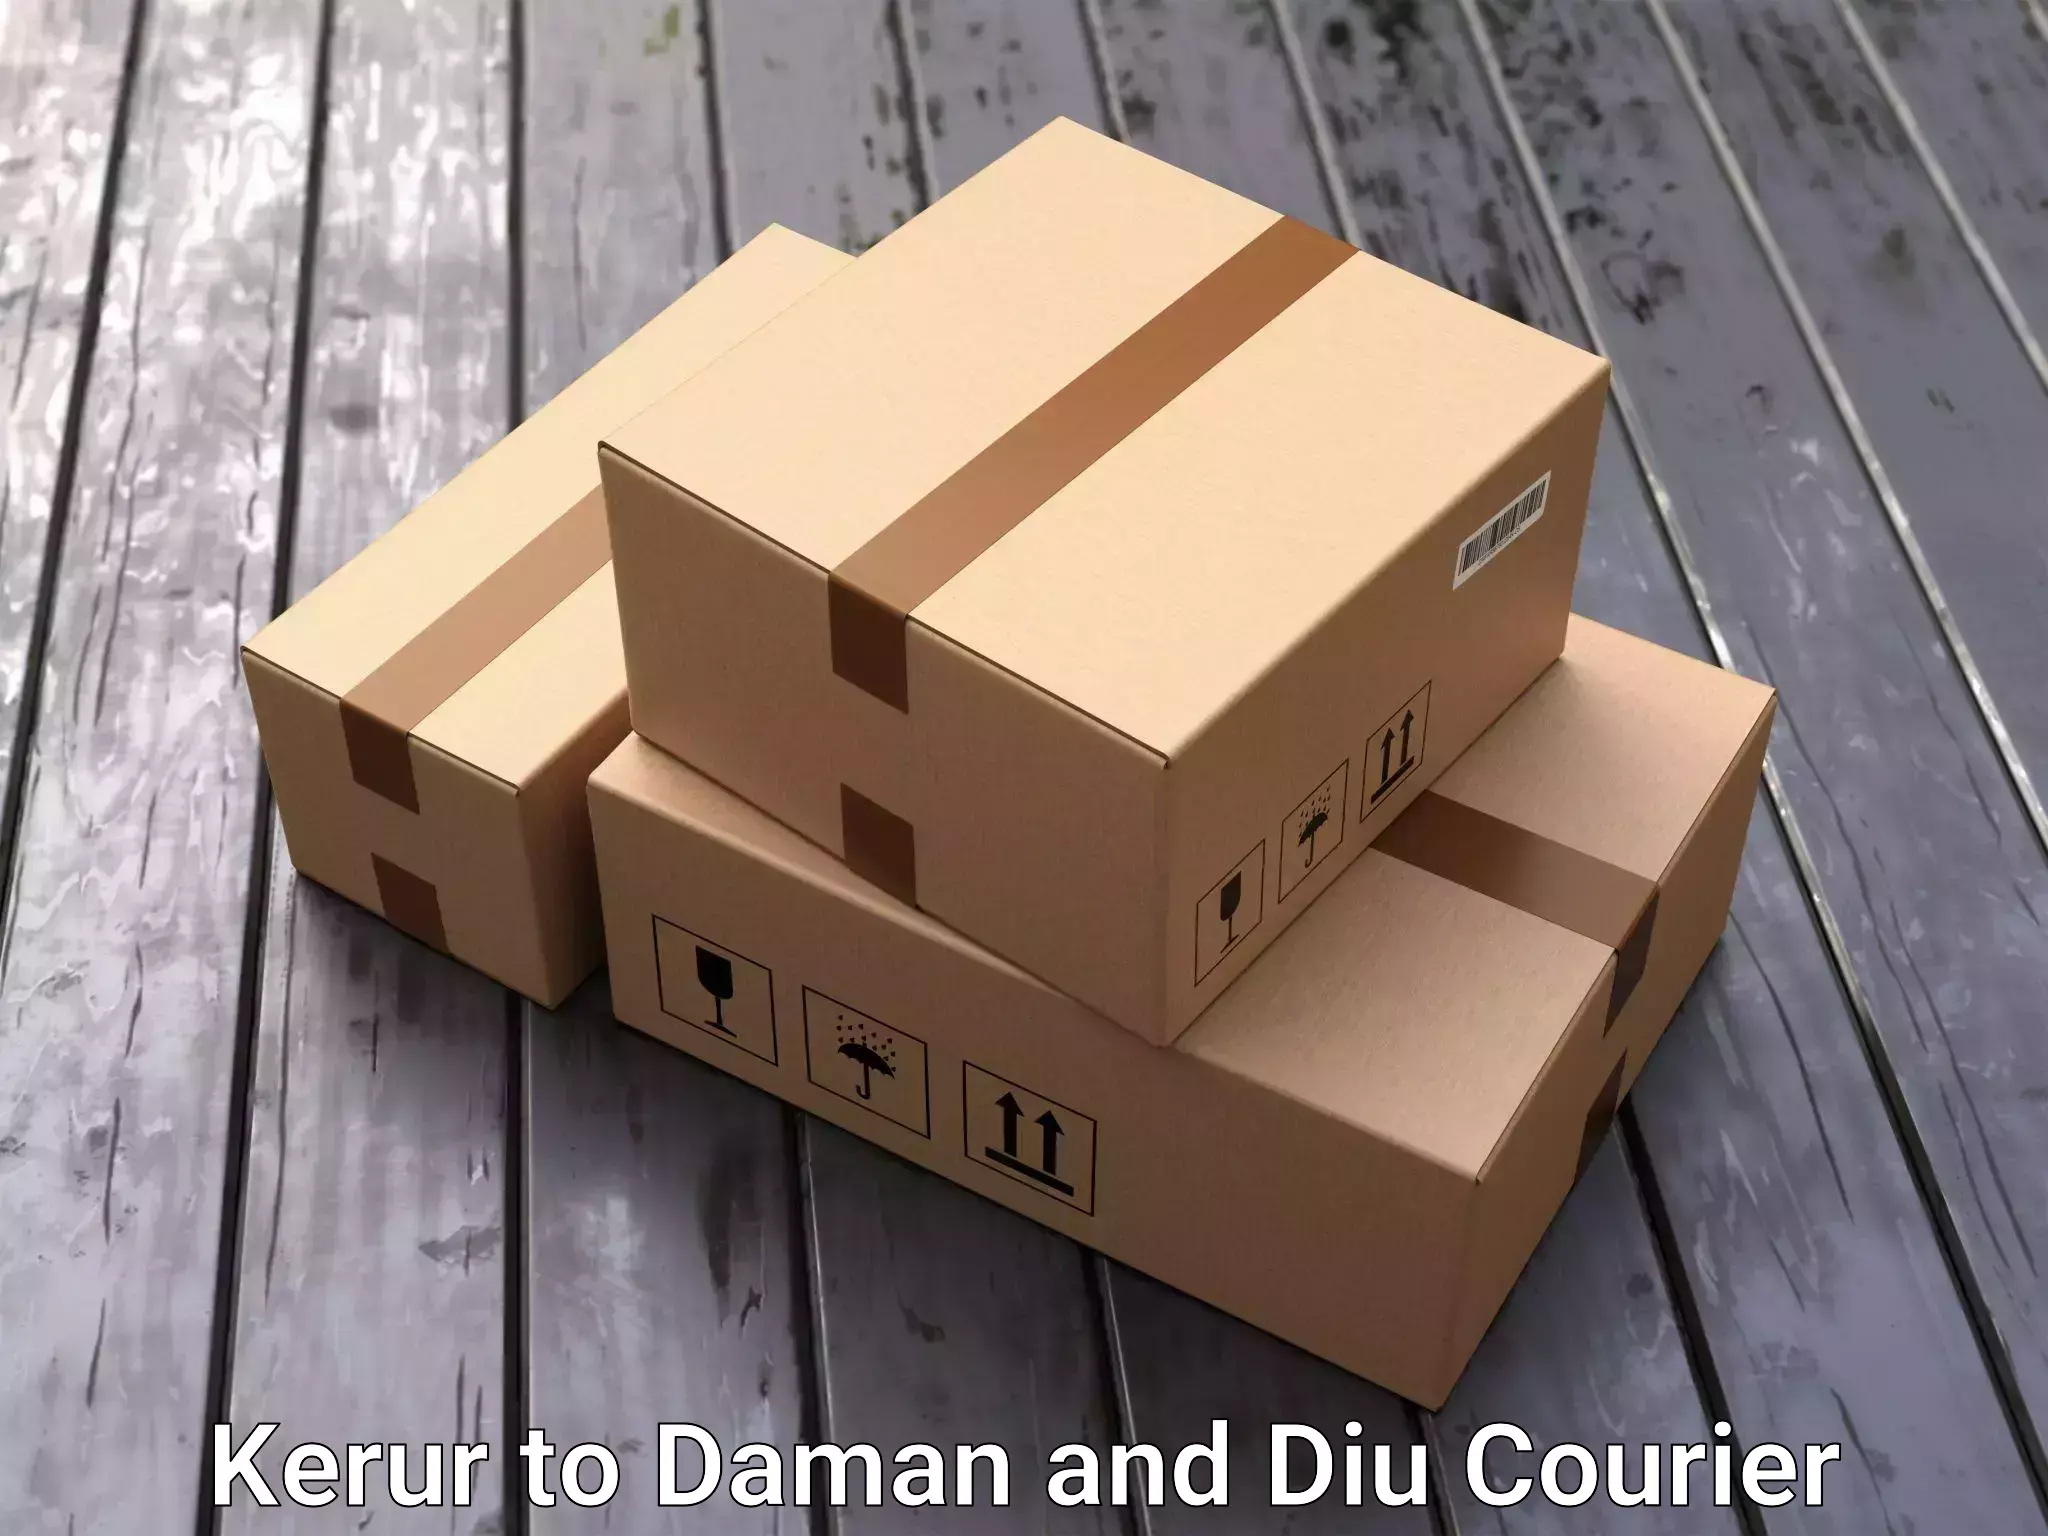 Furniture transport experts Kerur to Daman and Diu